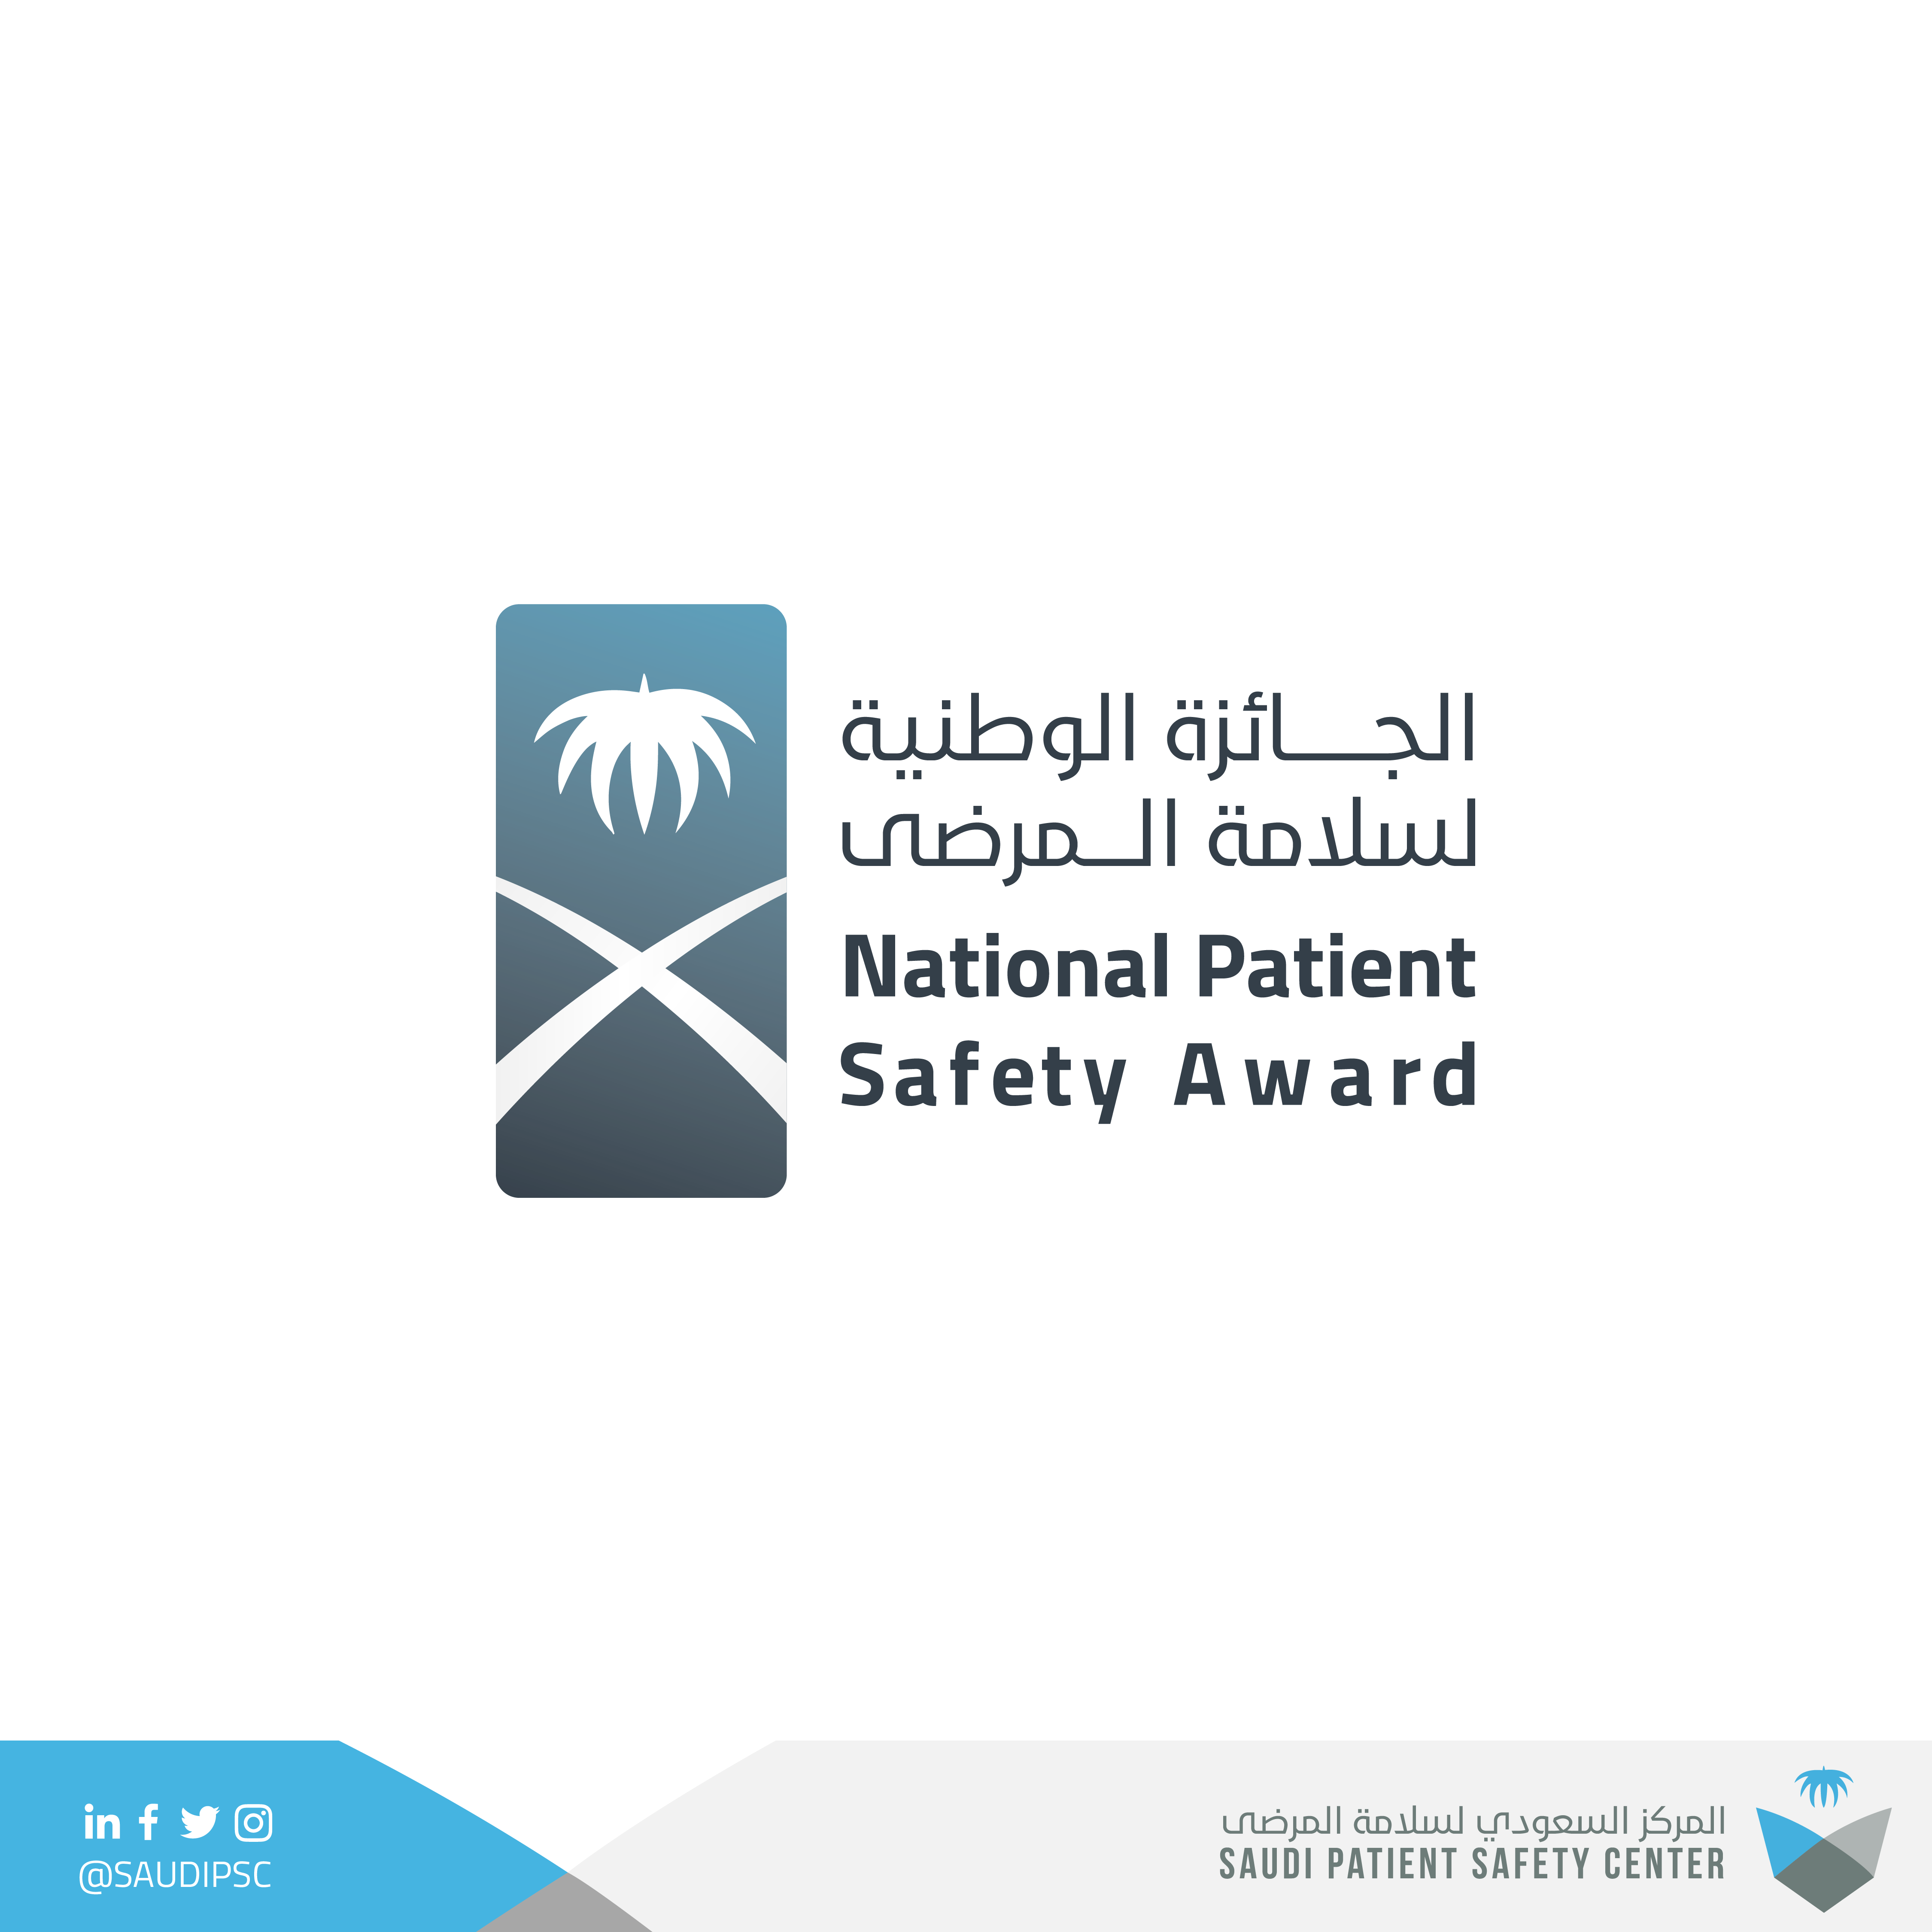 يعلن المركز السعودي لسلامة المرضى عن انطلاق الجائزة الوطني لسلامة المرضى في نسختها الخامسة لعام ٢٠٢٢